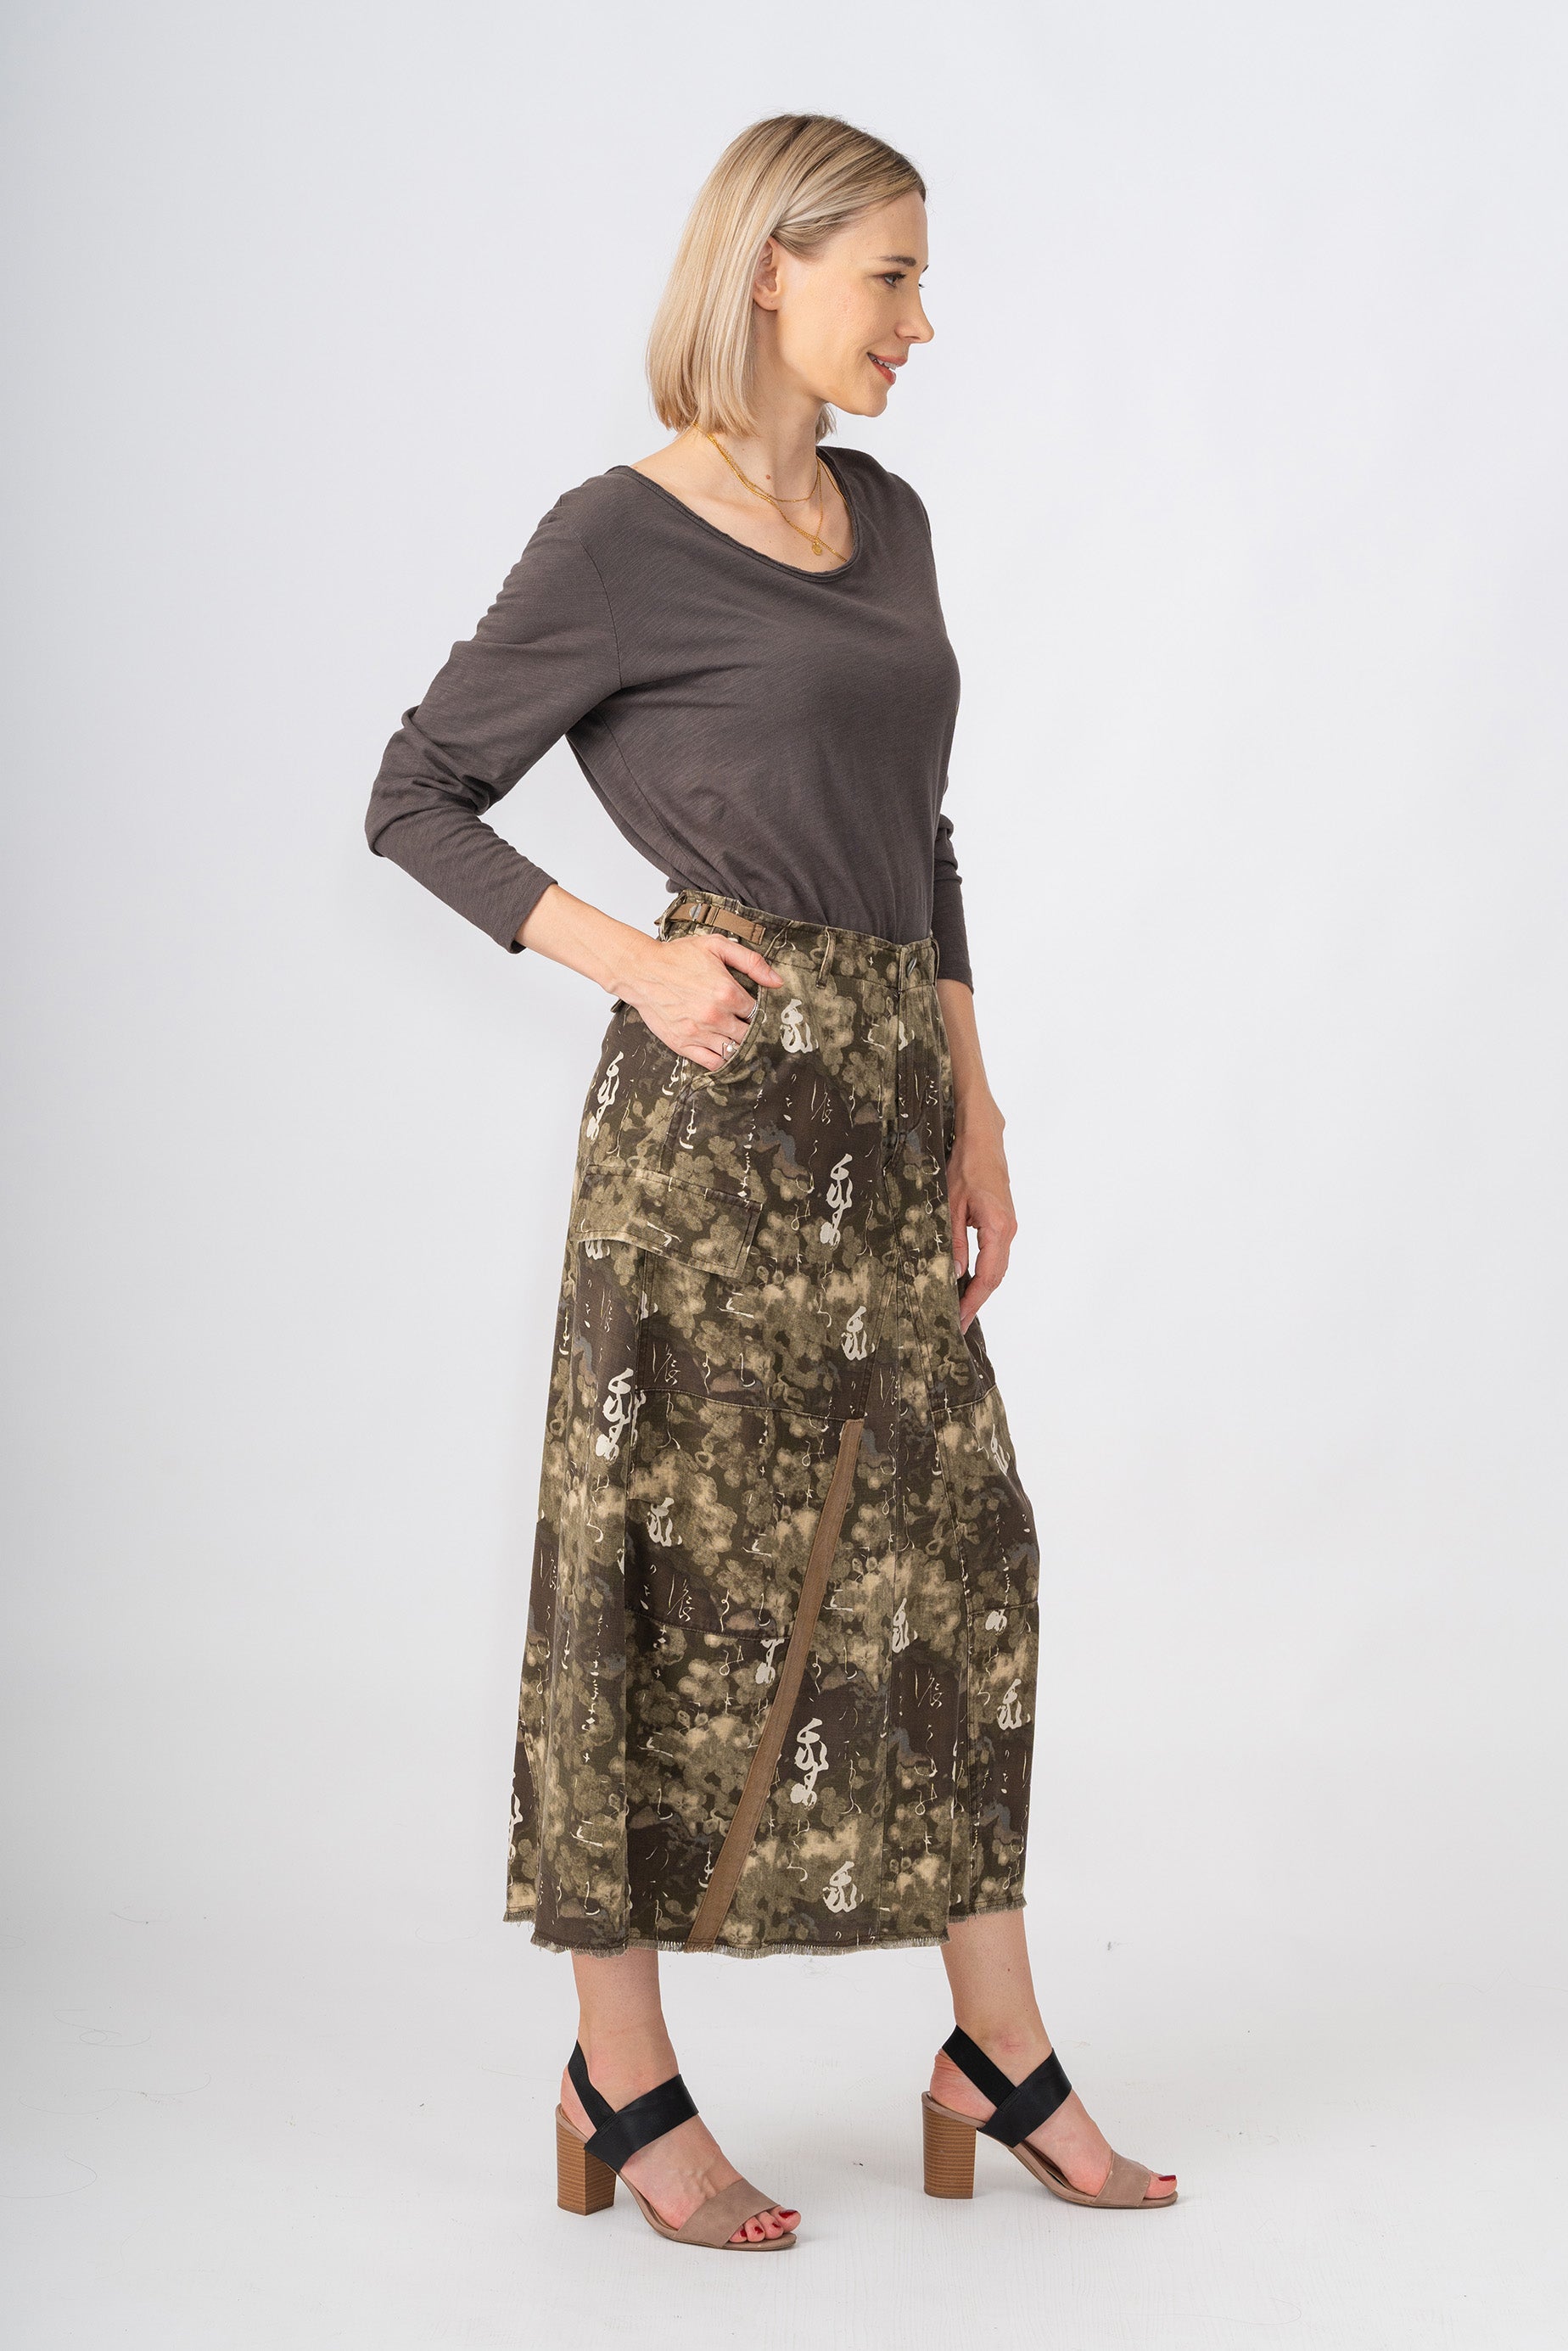 100% Silk long skirt in Brush Print